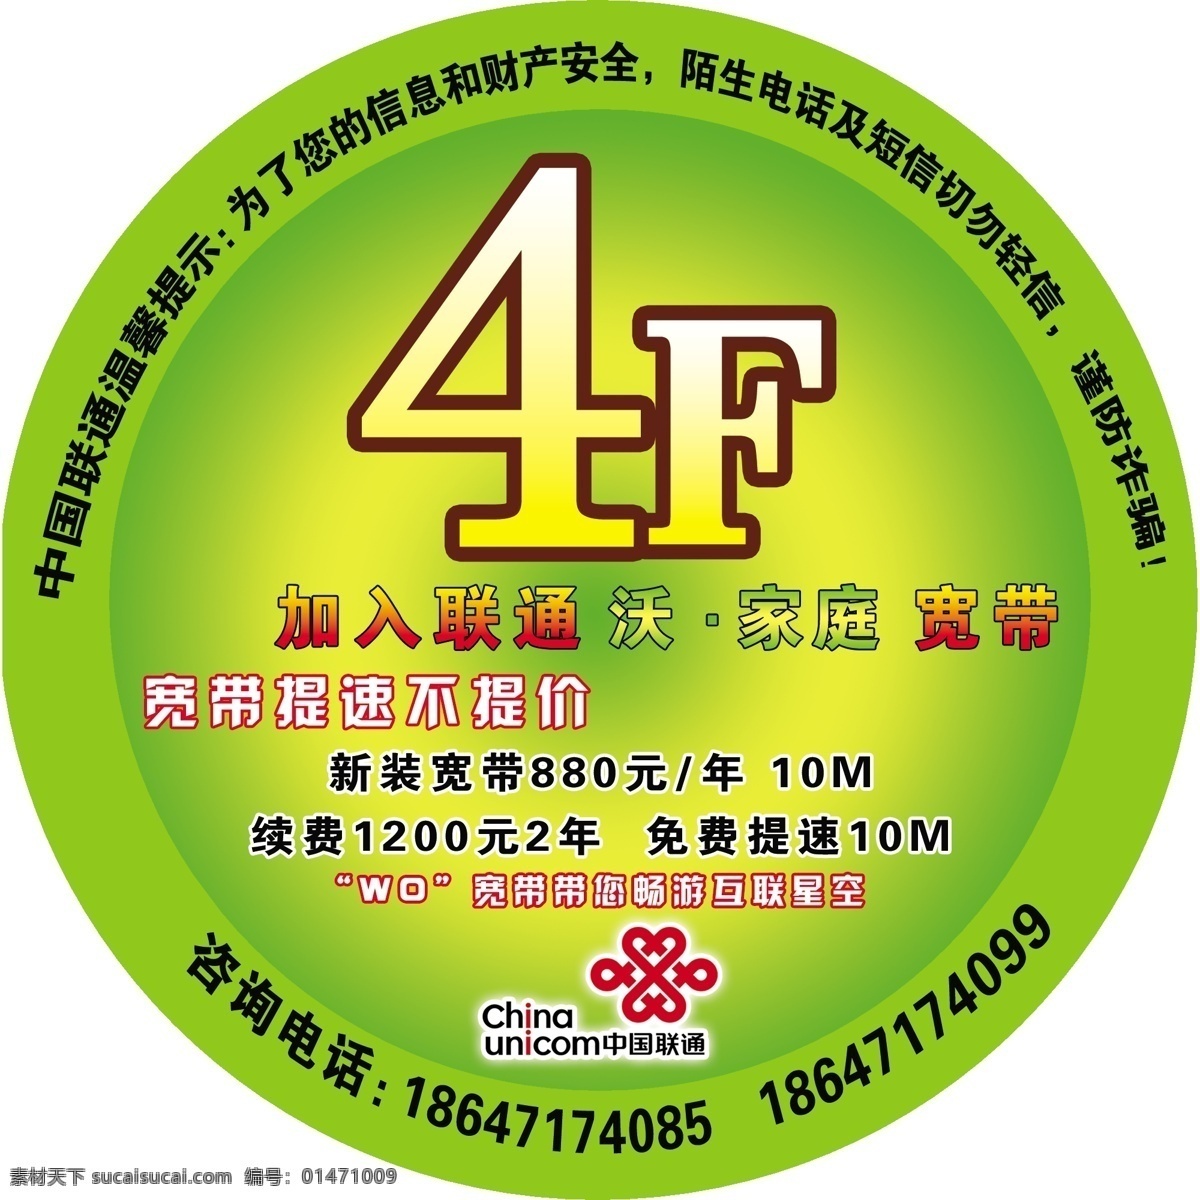 中国联通 楼层 号 联通标志 咨询电话 联通沃家庭 宽带 提速 不 提价 4f 原创设计 原创展板